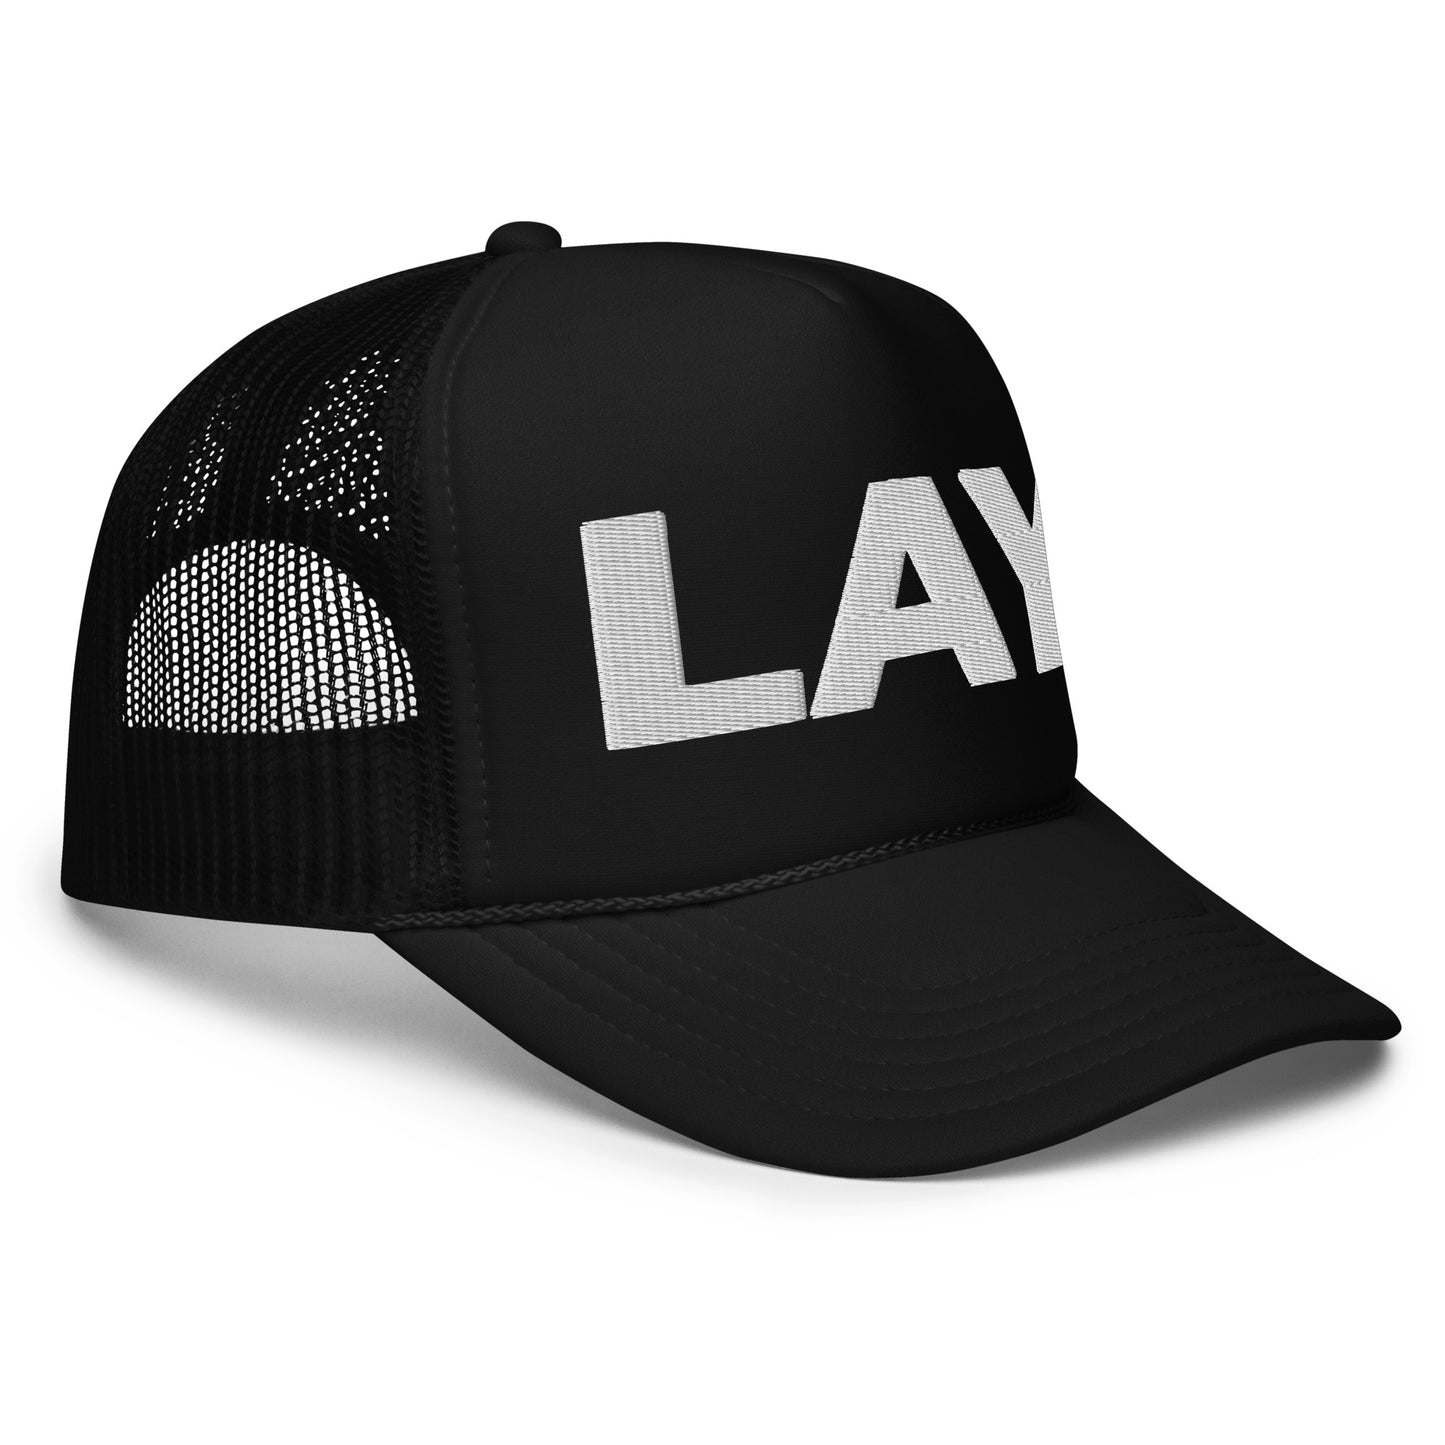 lay hat